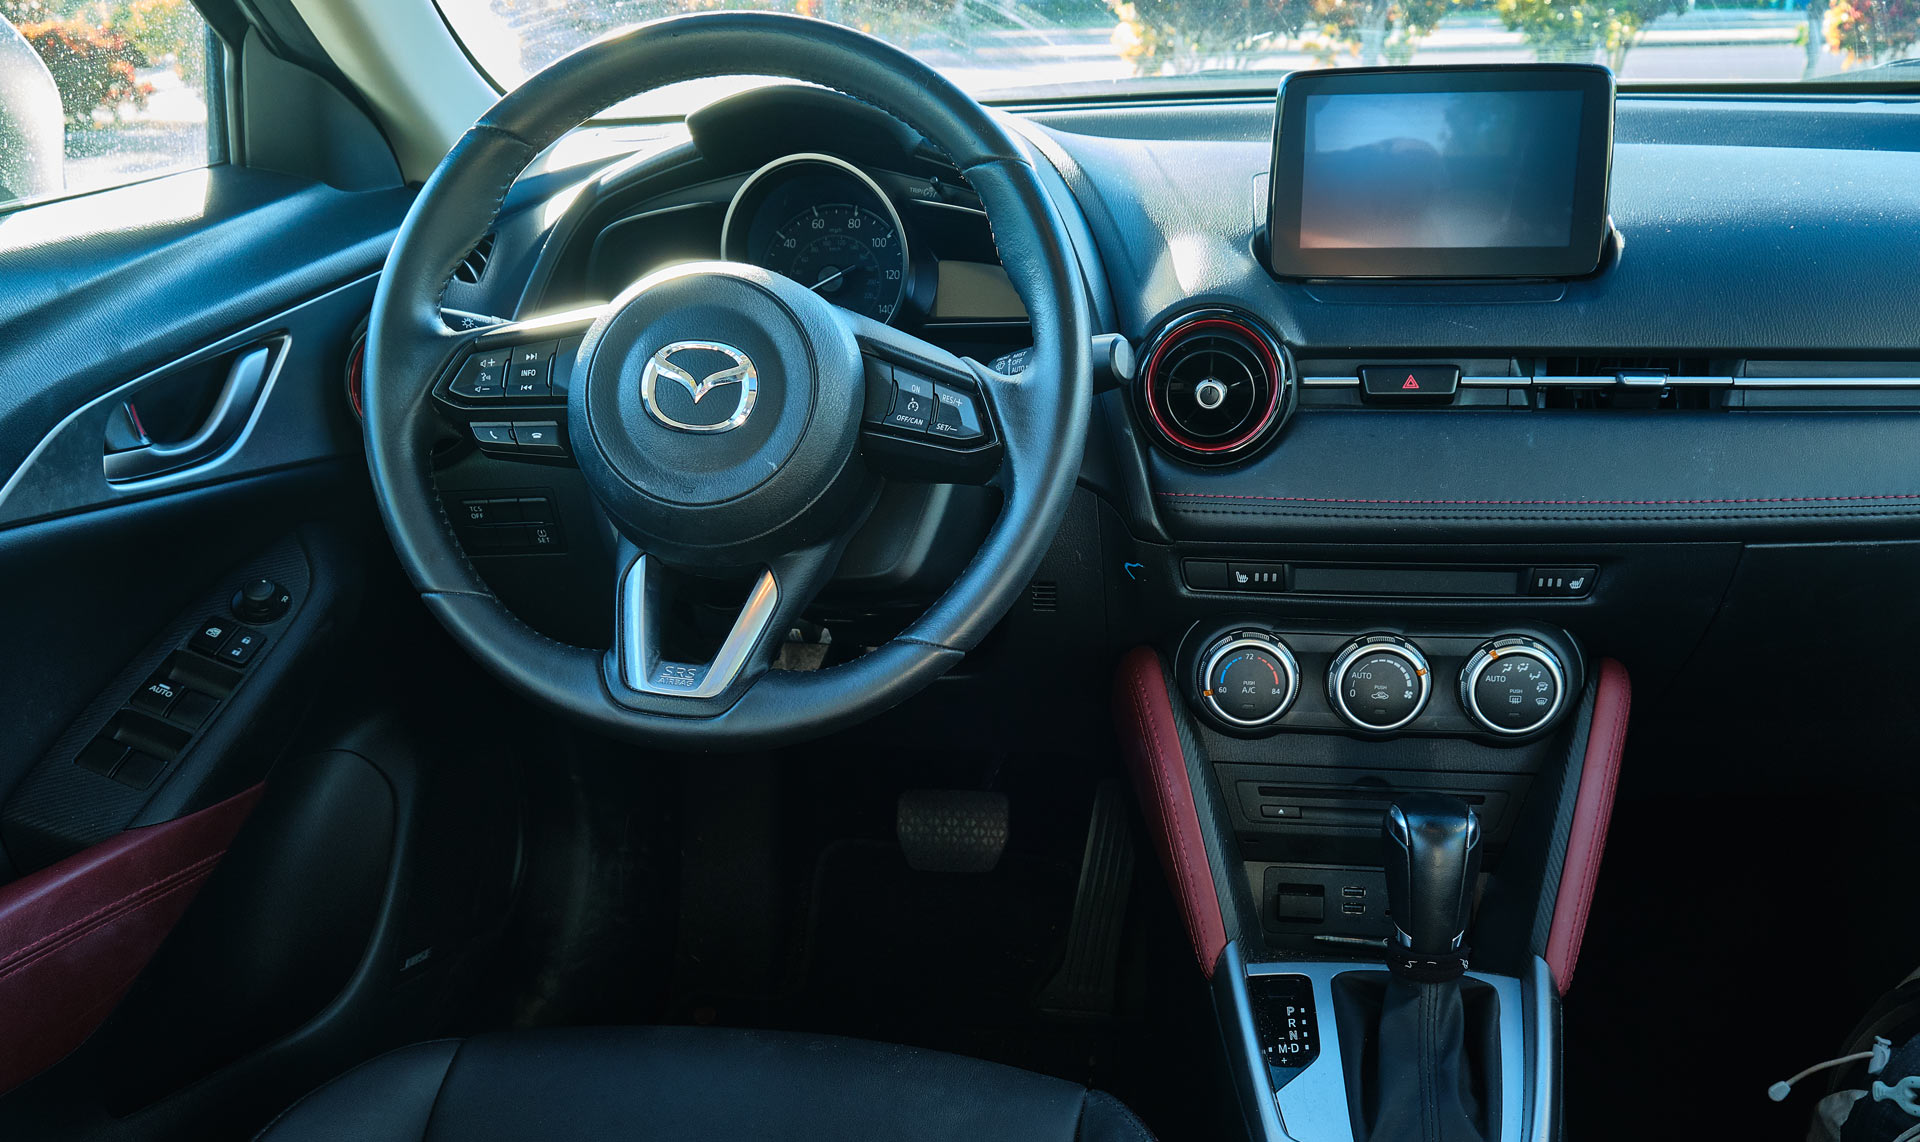 Driven 2018 Mazda Cx 3 Touring Ticks Almost All The Right